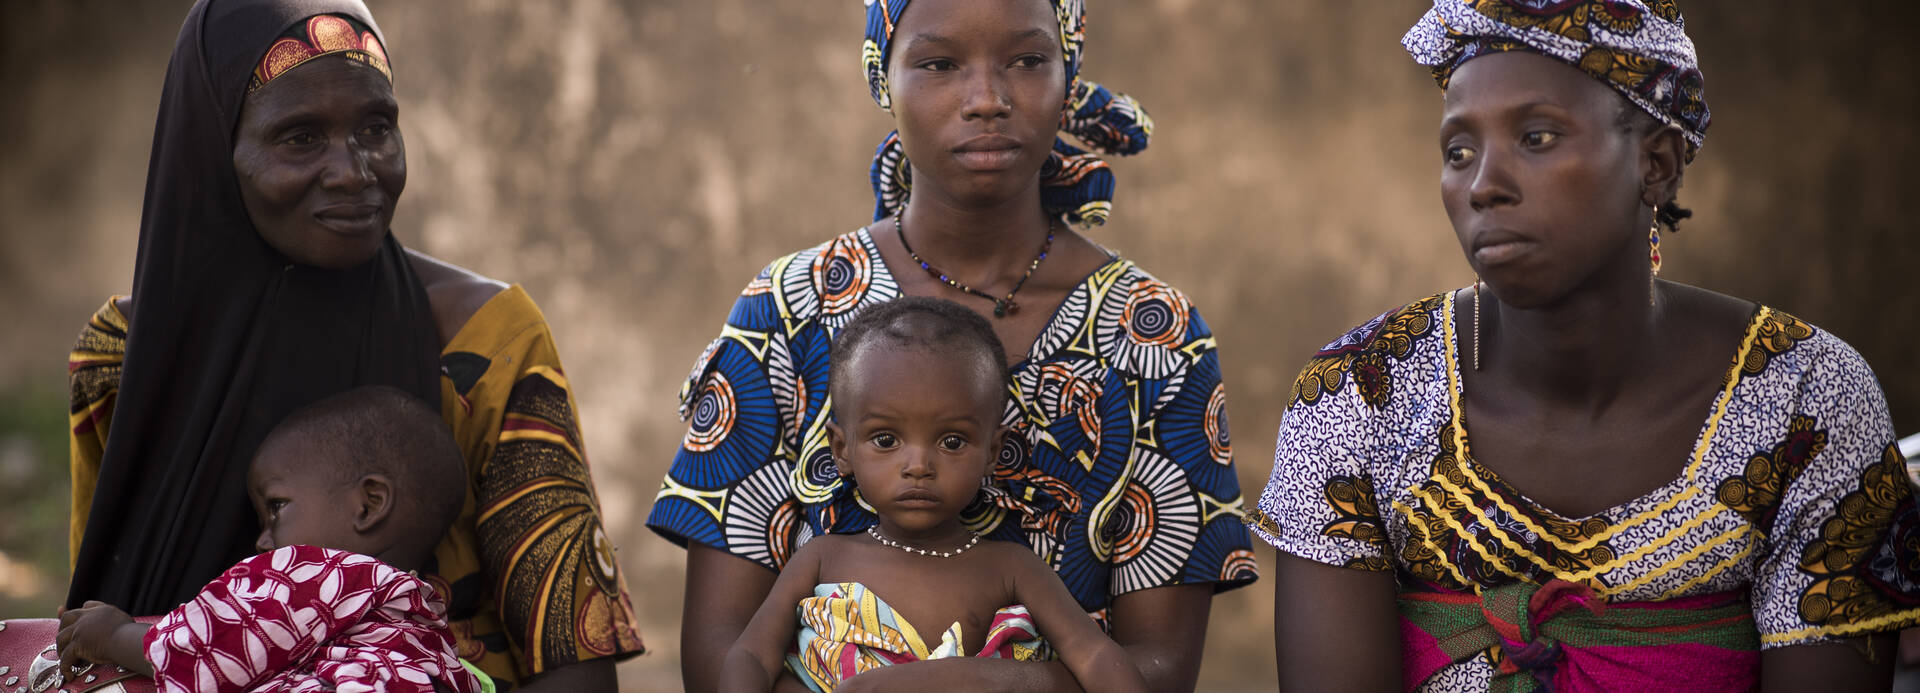 Frauen in Mali sitzen zusammen mit ihren Kindern auf dem Schoß.